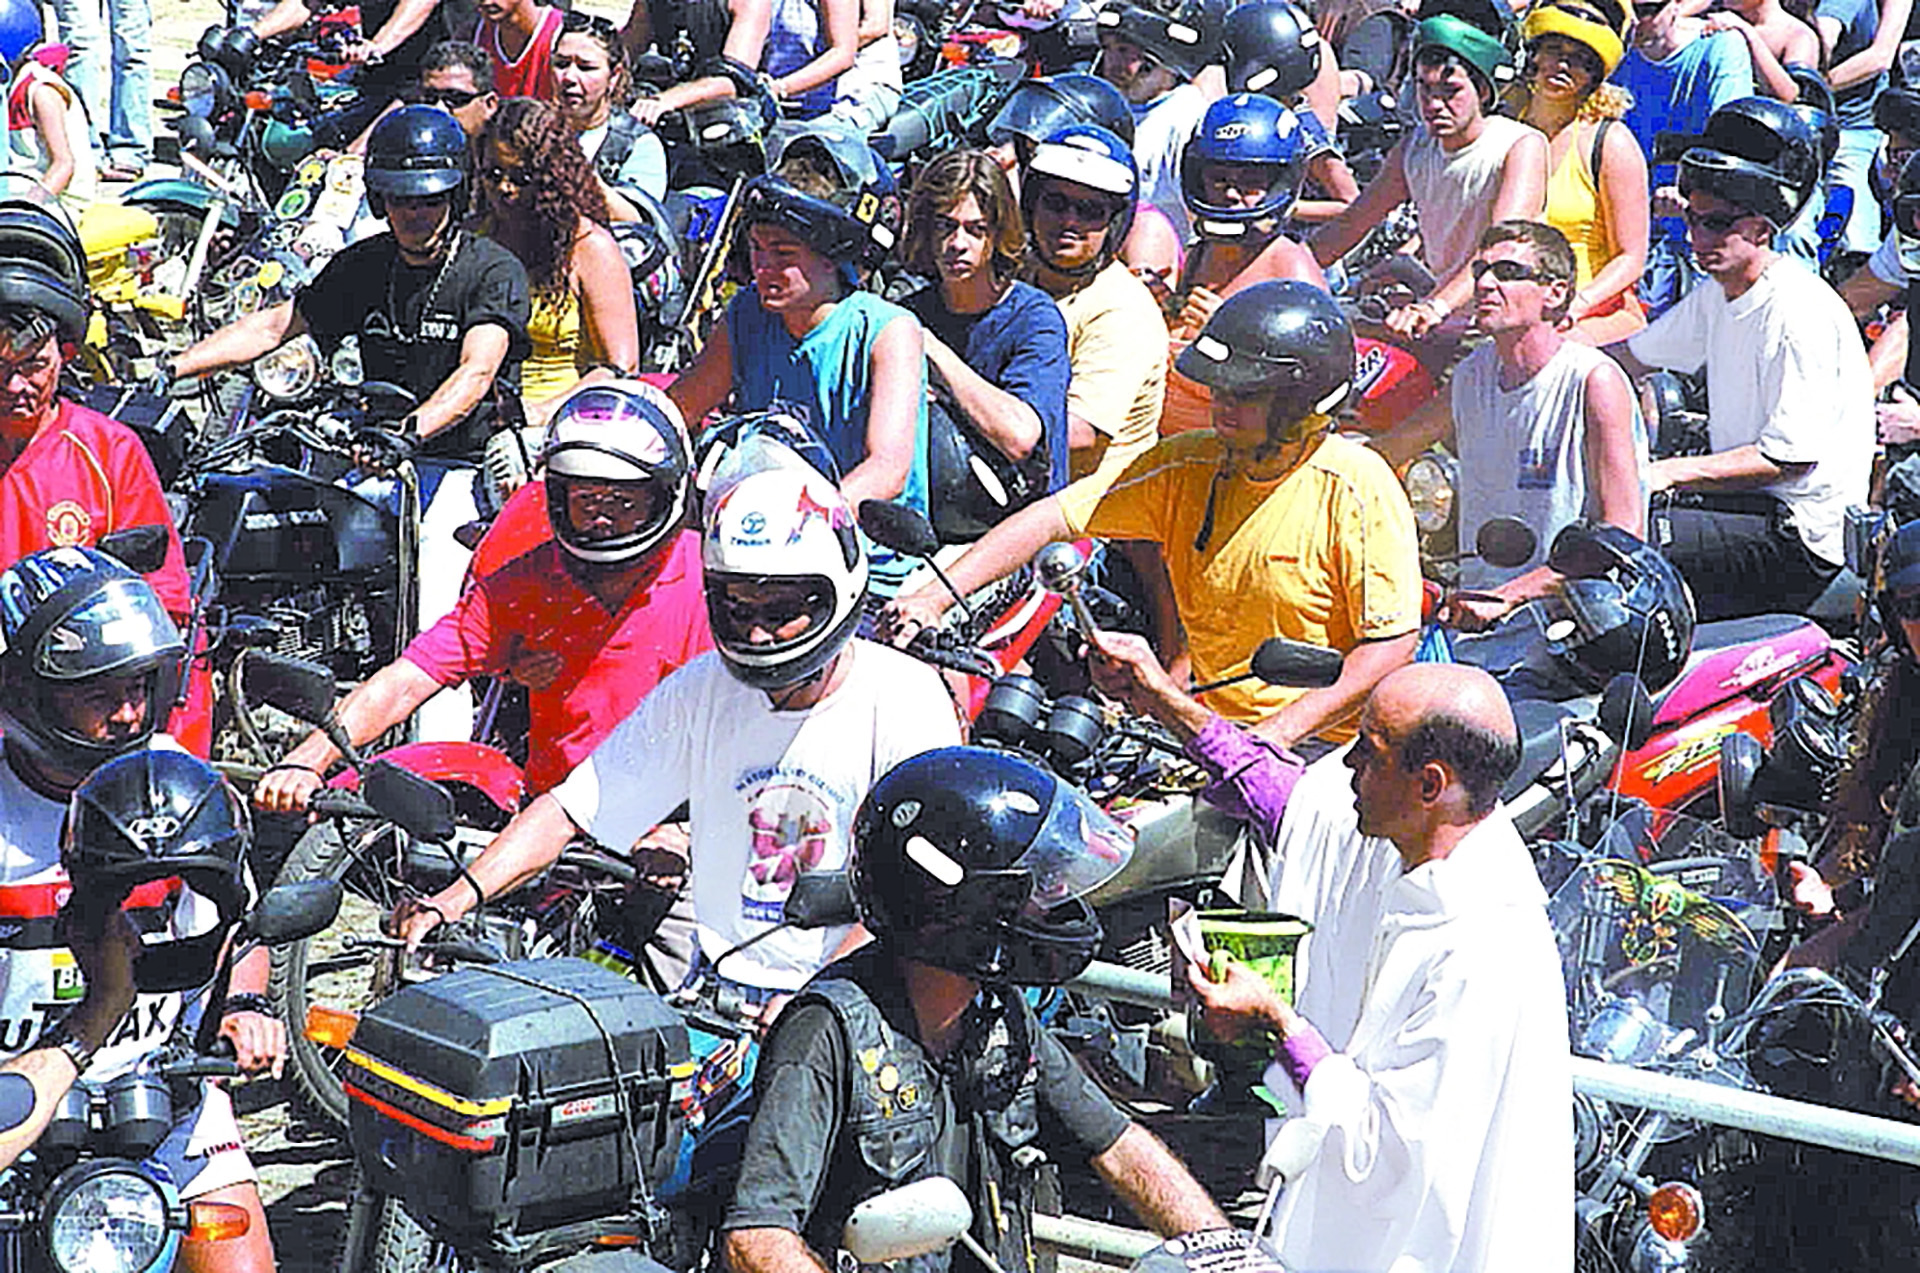 Romaria dos Motociclista, no Parque da Prainha, em homenagem a Nossa Senhora da Penha. Padre Francisco Melo Cassaro, abençoando os pilotos neg: 63.423.